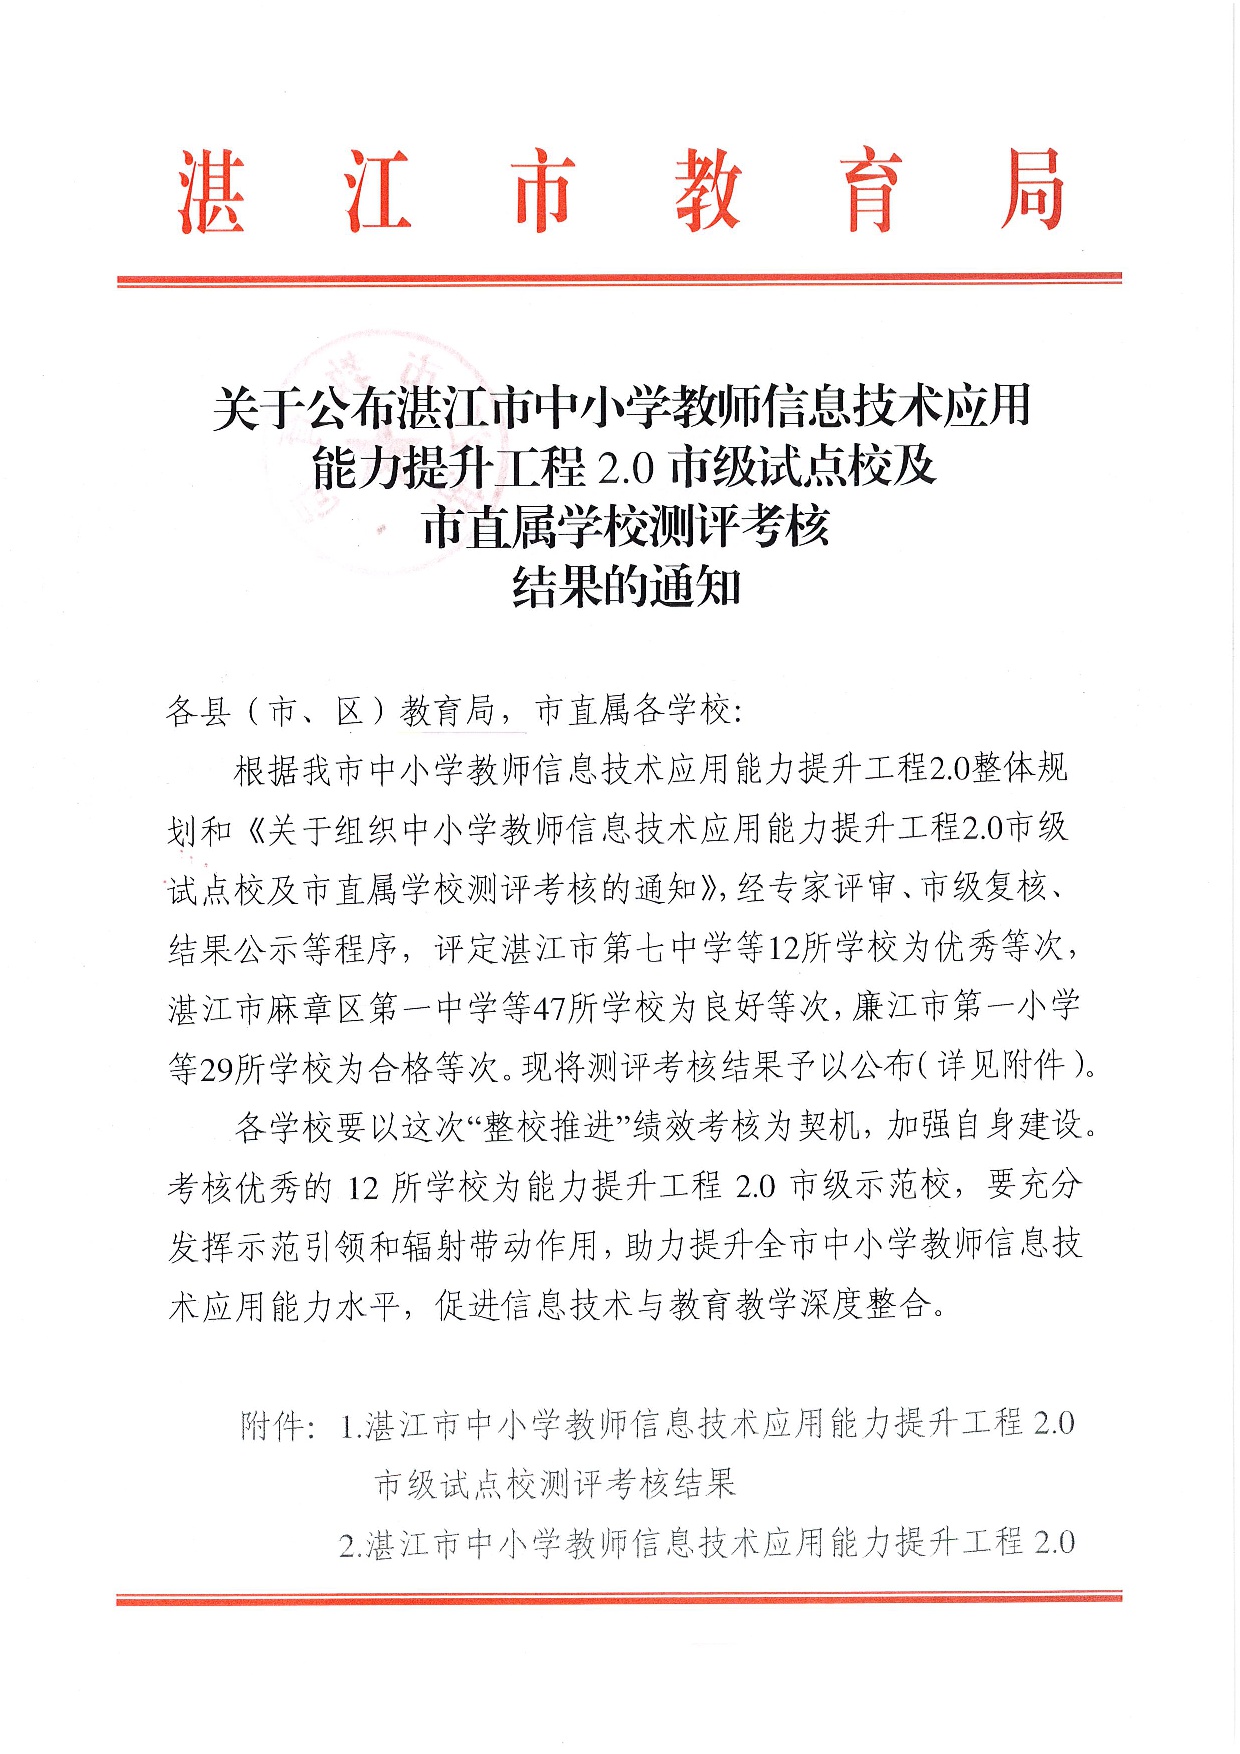 w1591关于公布湛江市中小学教师信息技术应用能力提升工程2.0市级试点校及市直属学校测评考核结果的通知-001.jpg